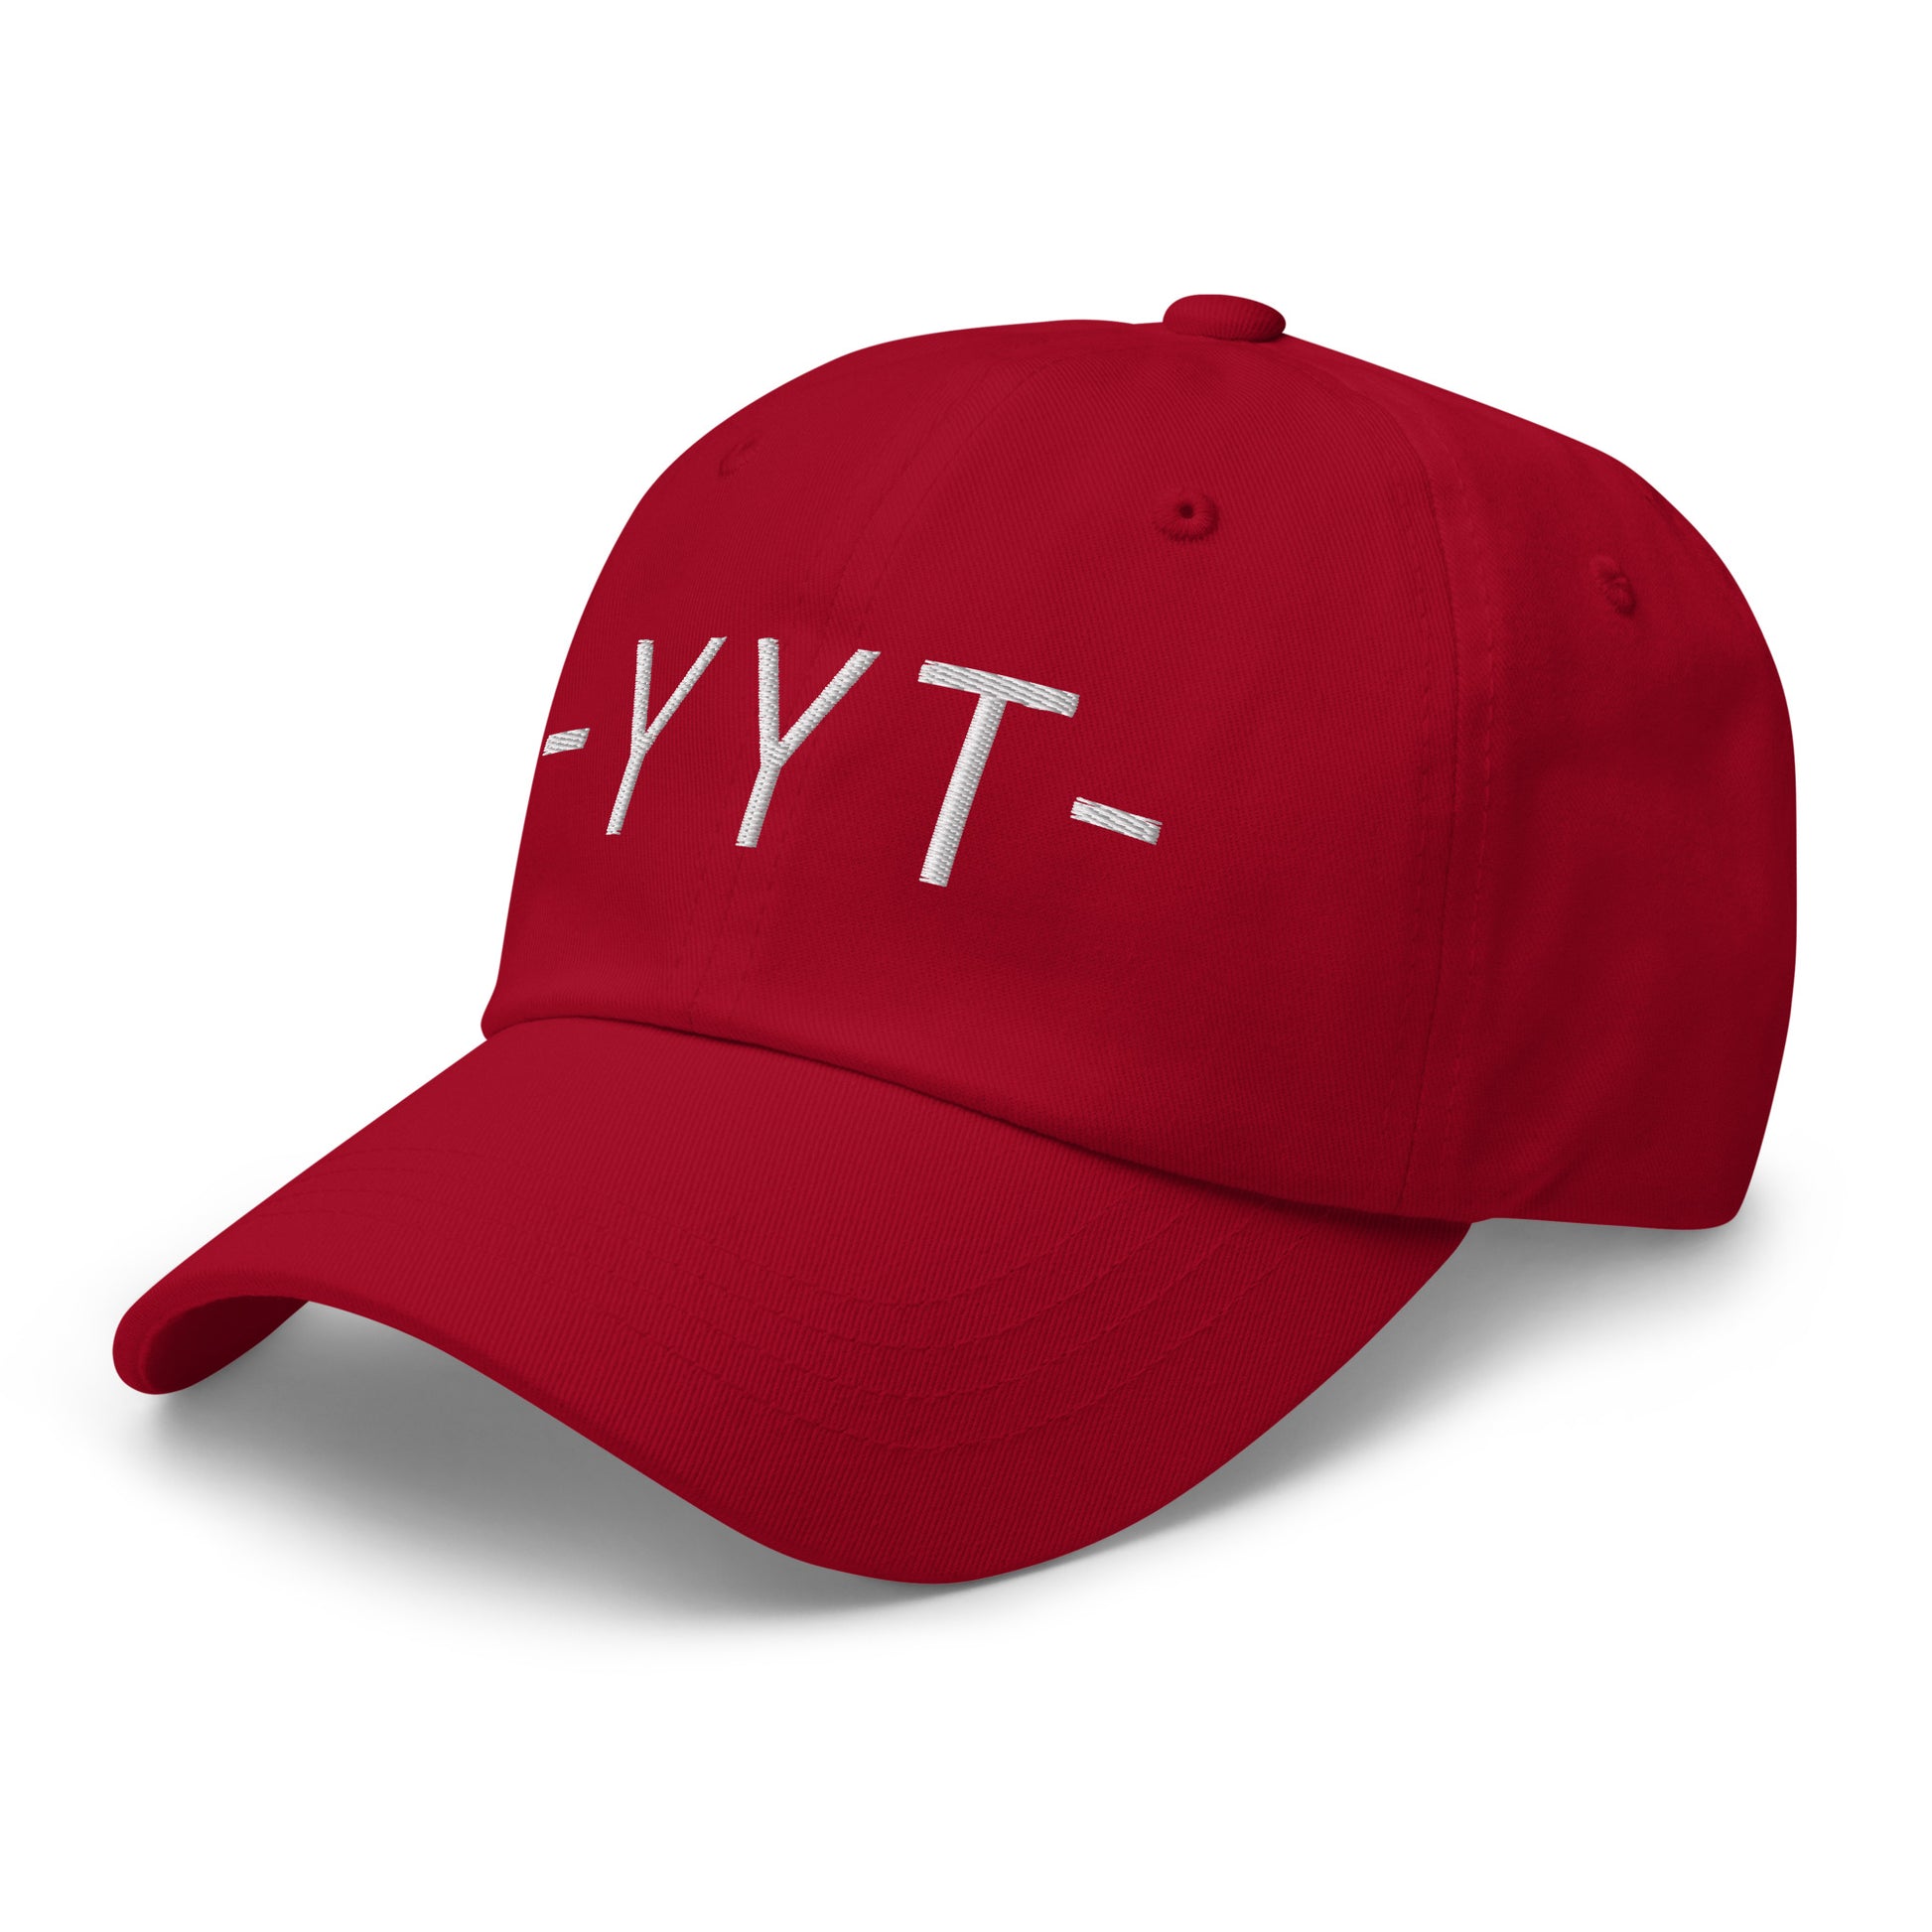 Souvenir Baseball Cap - White • YYT St. John's • YHM Designs - Image 01